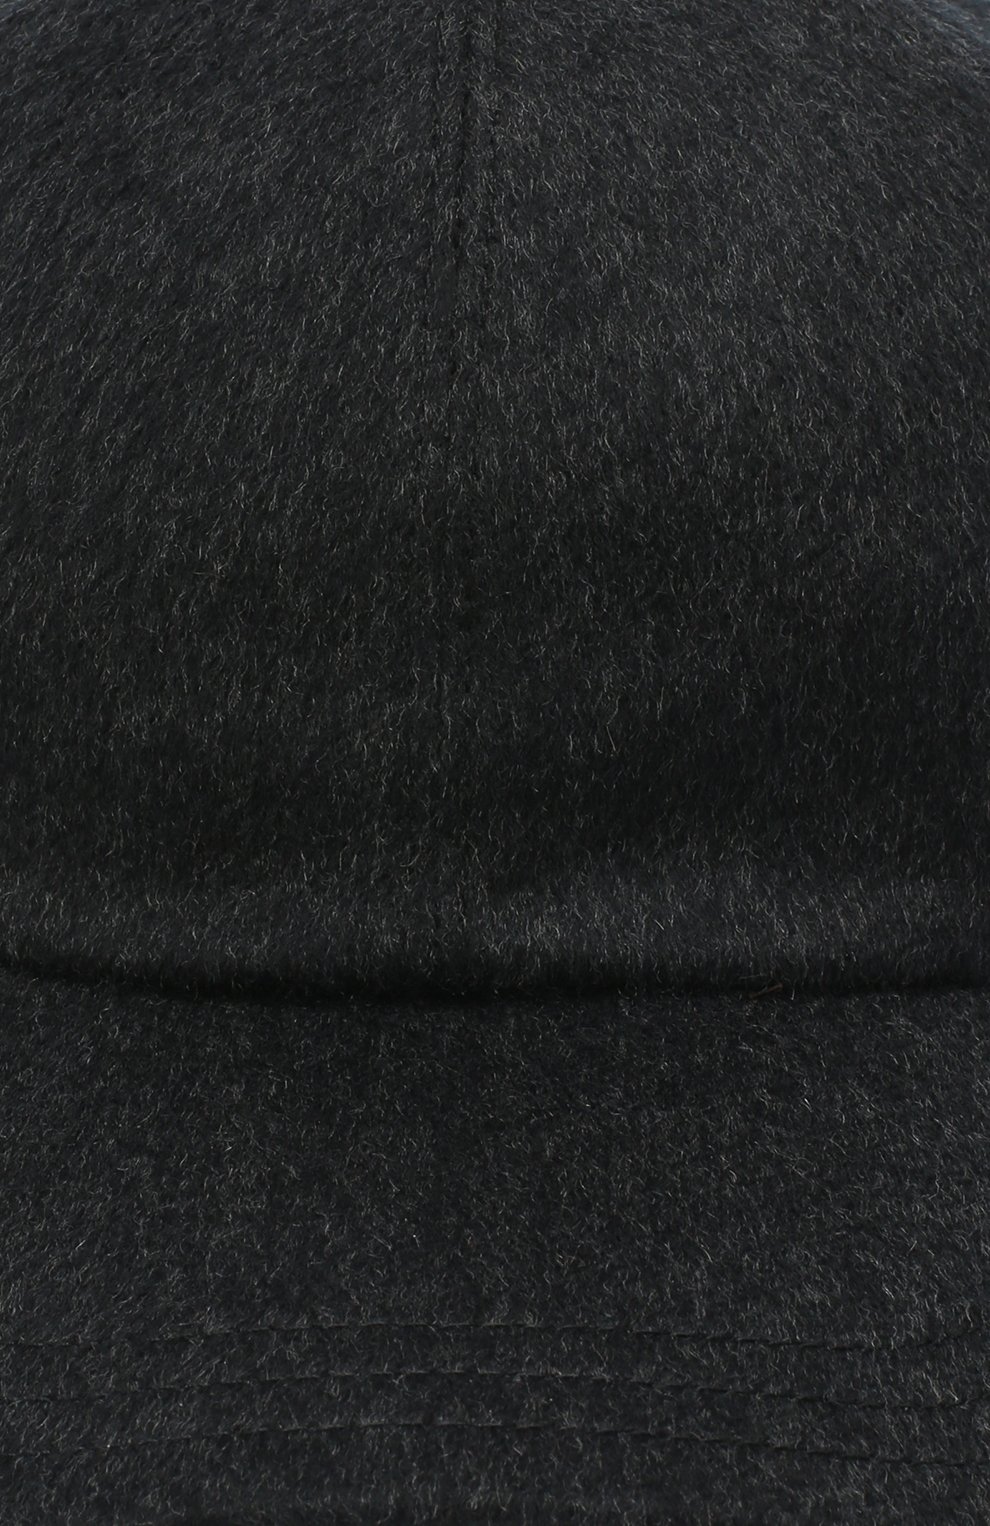 Мужской кашемировая бейсболка ZEGNA COUTURE темно-серого цвета, арт. ZEI82/B2I | Фото 3 (Материал: Текстиль, Кашемир, Шерсть)